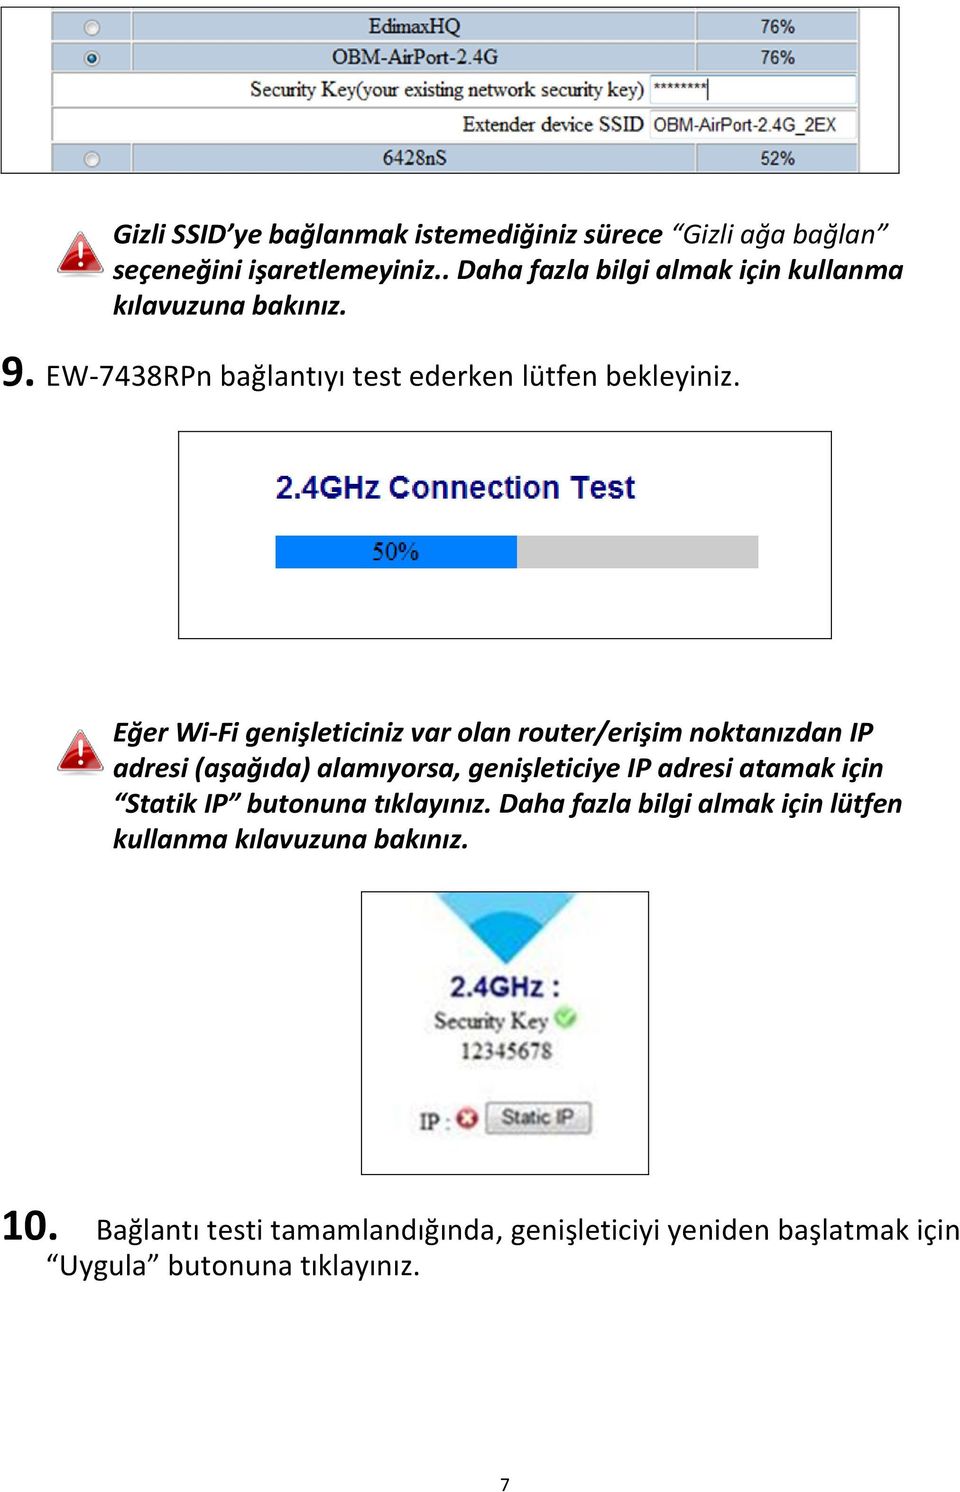 Eğer Wi-Fi genişleticiniz var olan router/erişim noktanızdan IP adresi (aşağıda) alamıyorsa, genişleticiye IP adresi atamak için